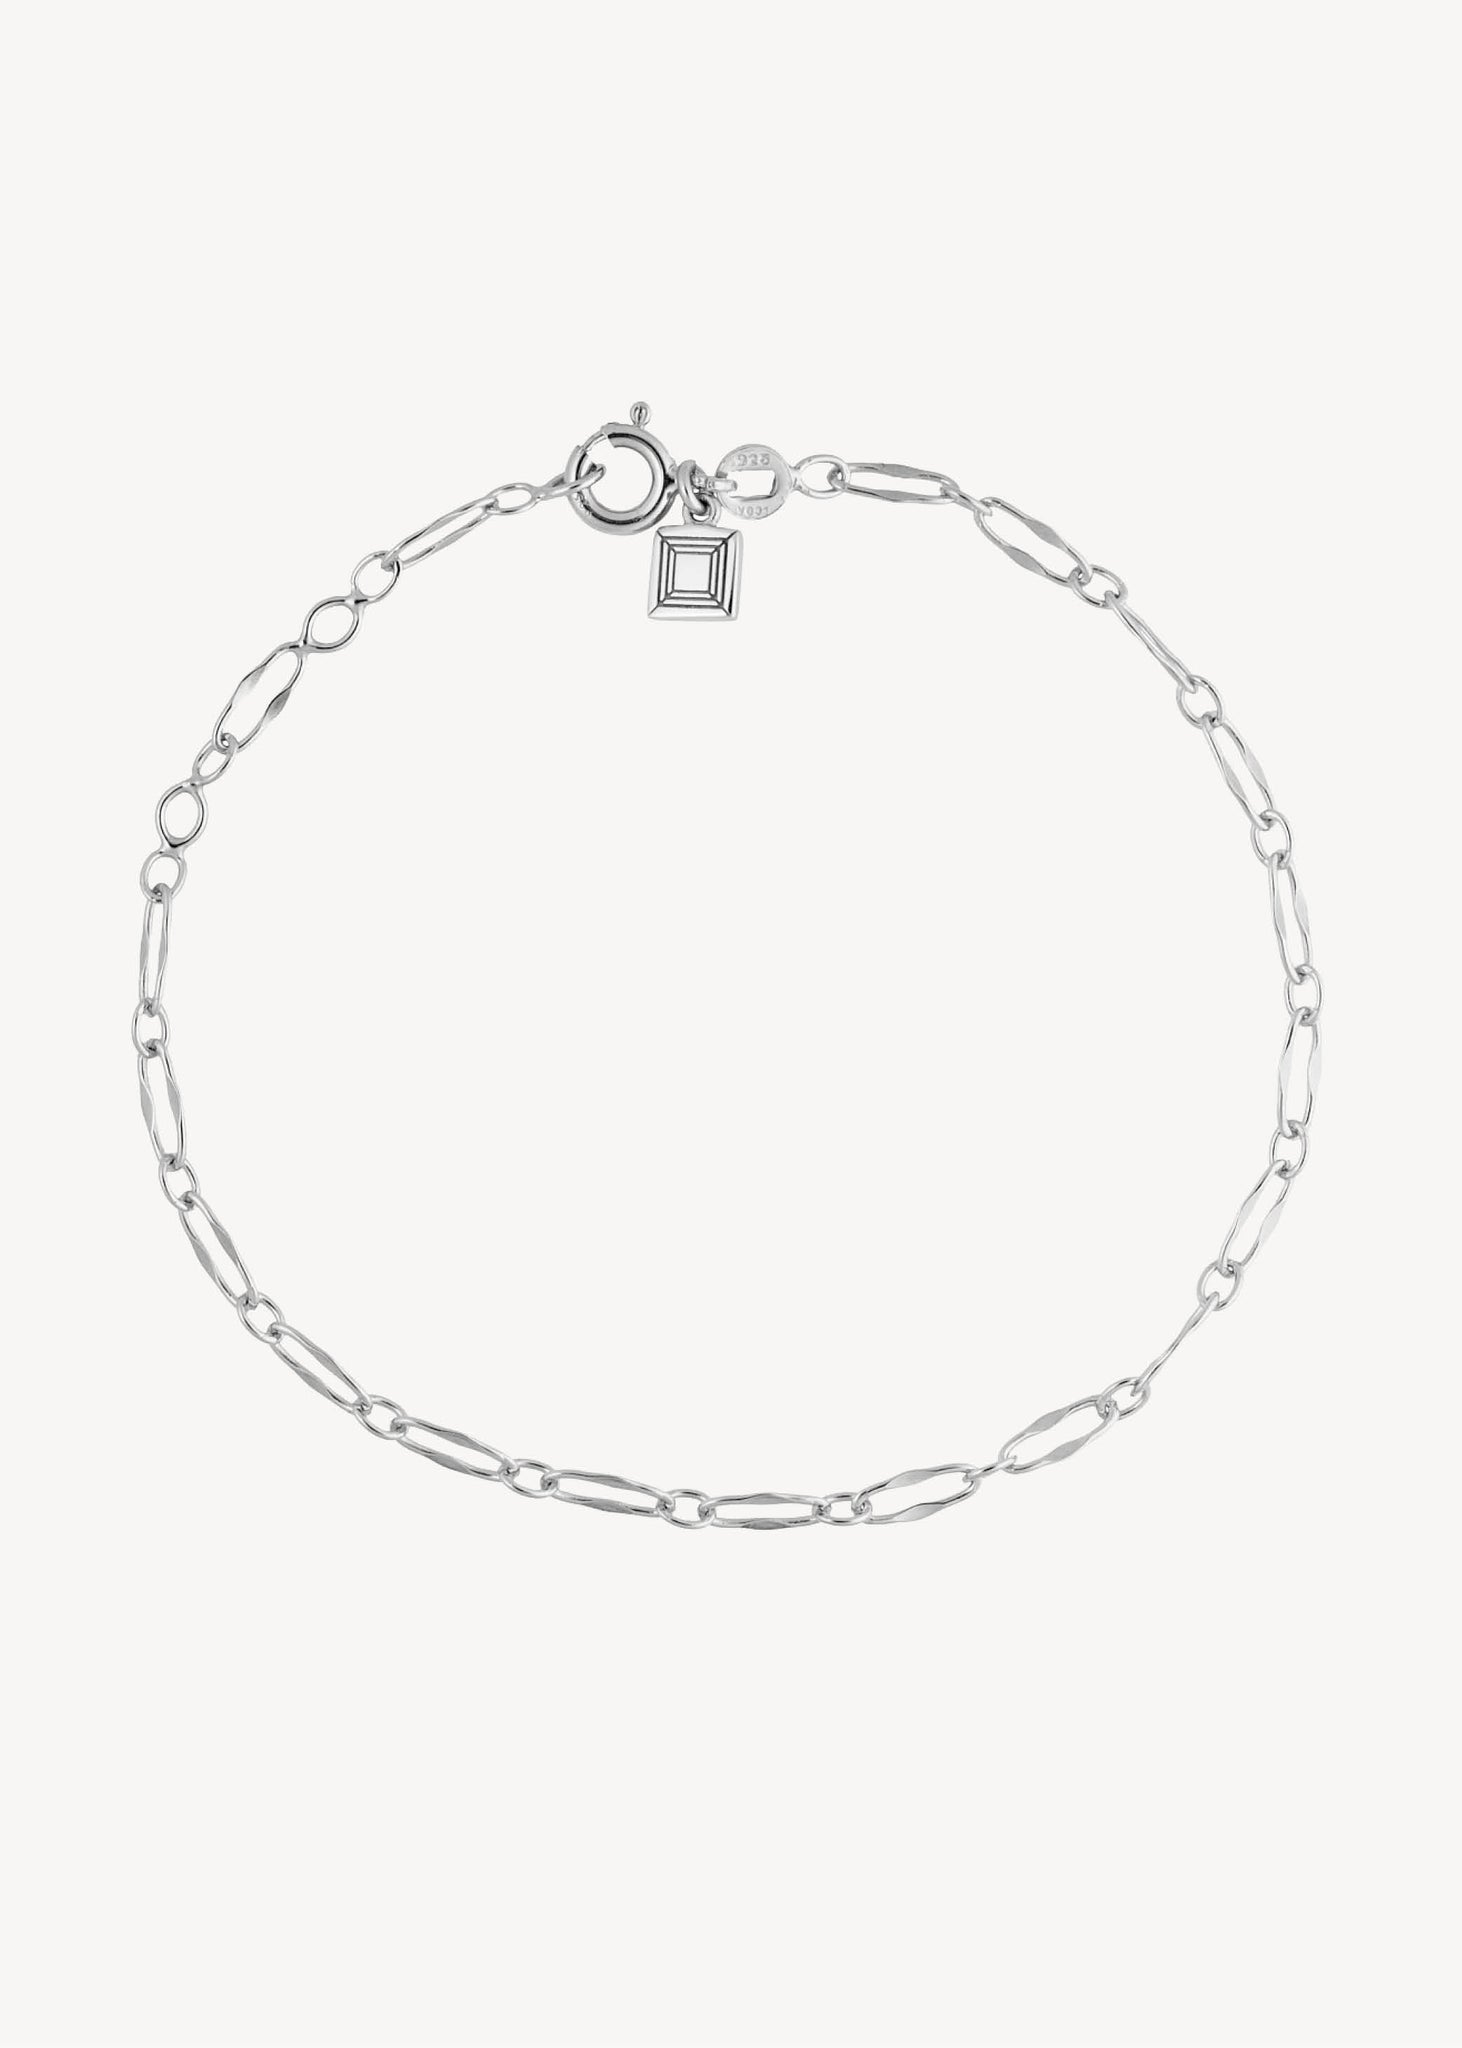 Lace bracelet - silver